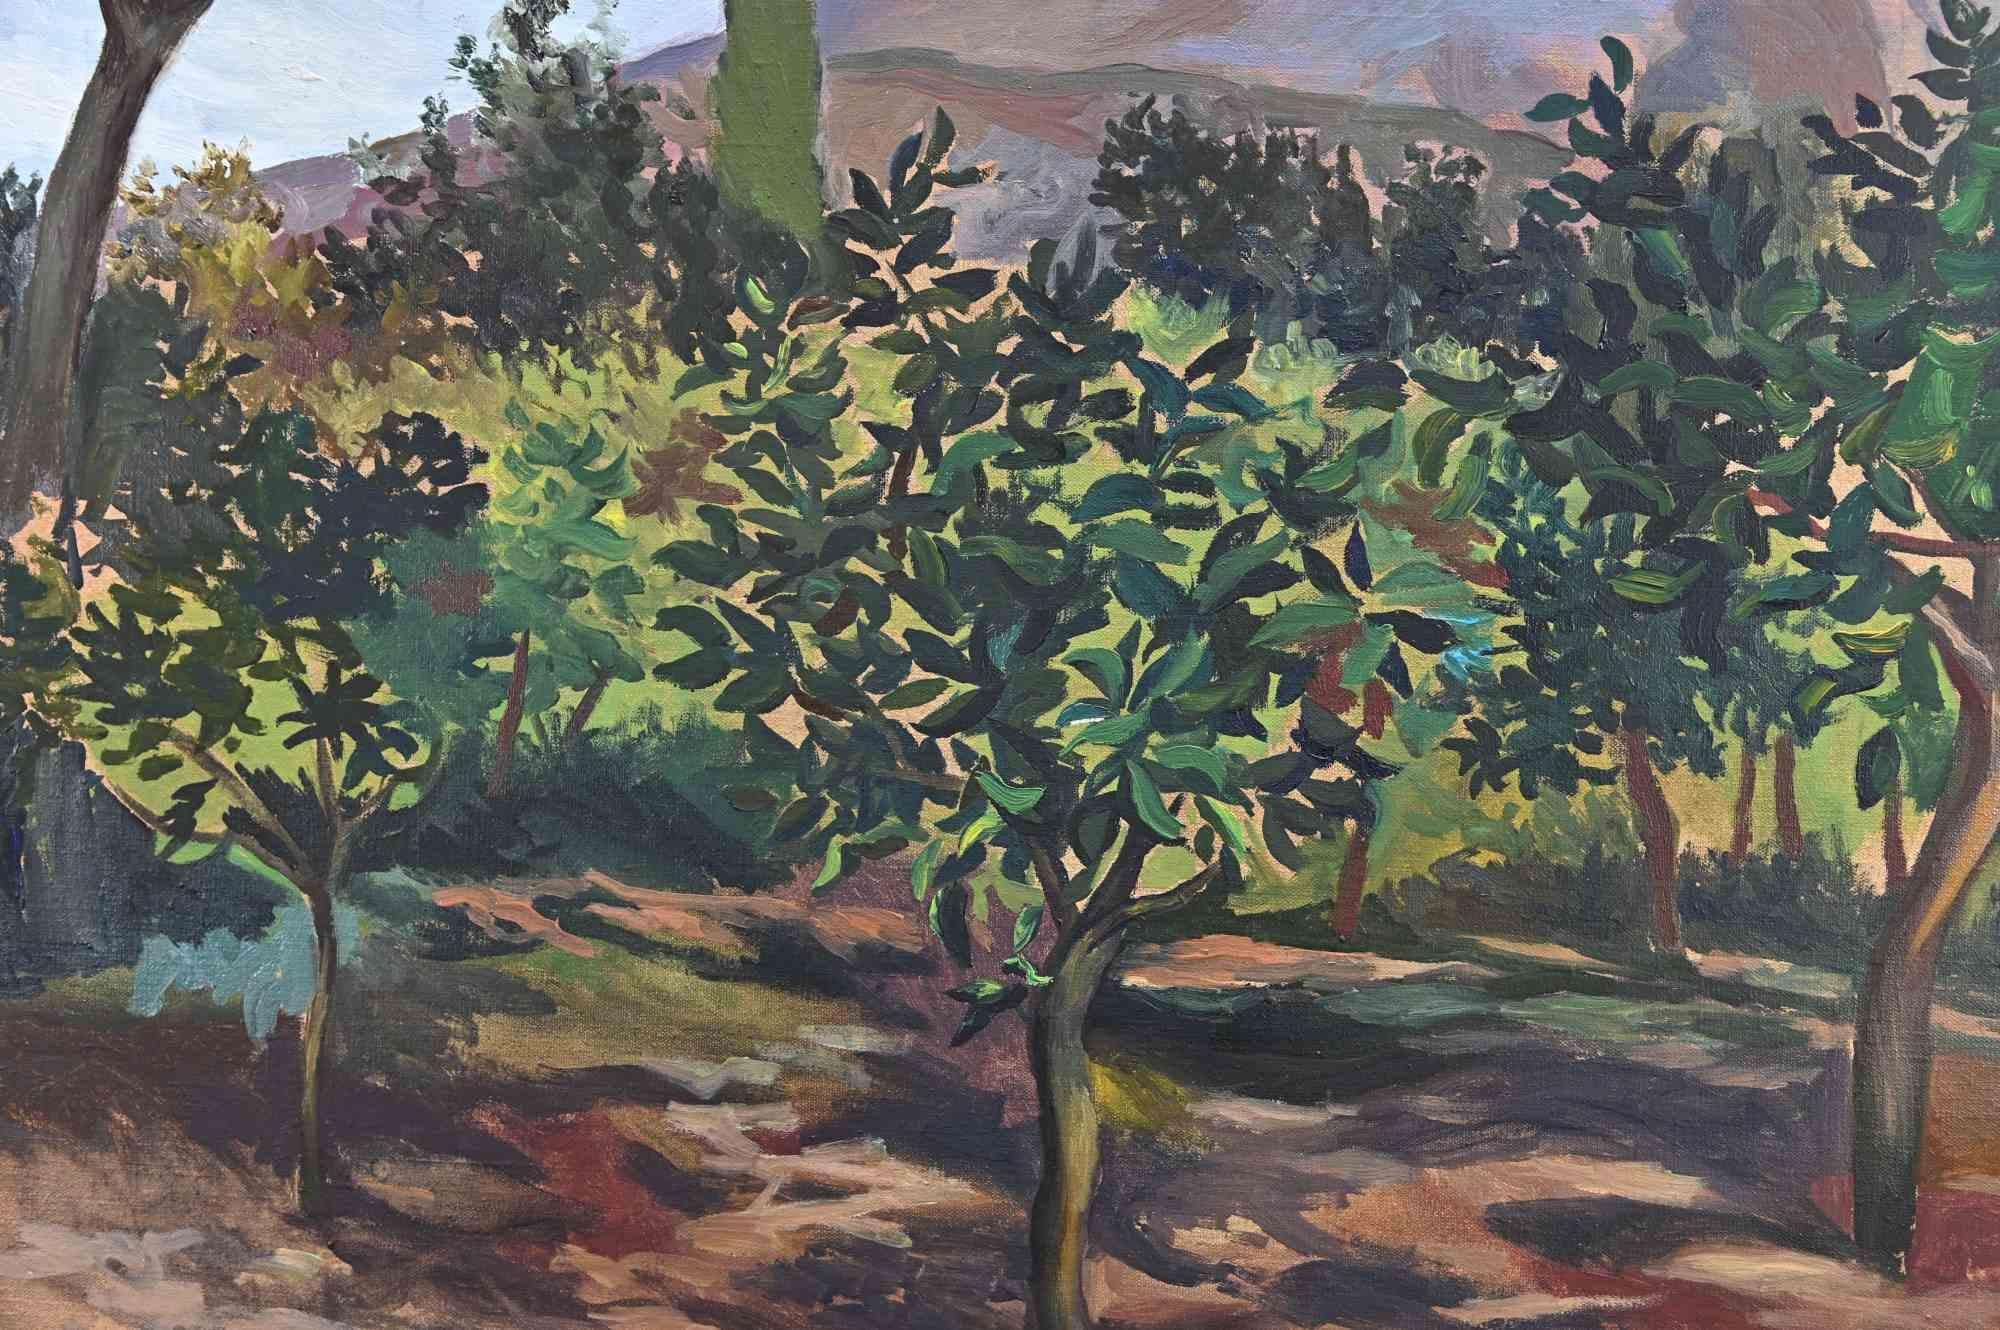 Vesuvius - Original Oil on Canvas by Renato Guttuso - 1952 1